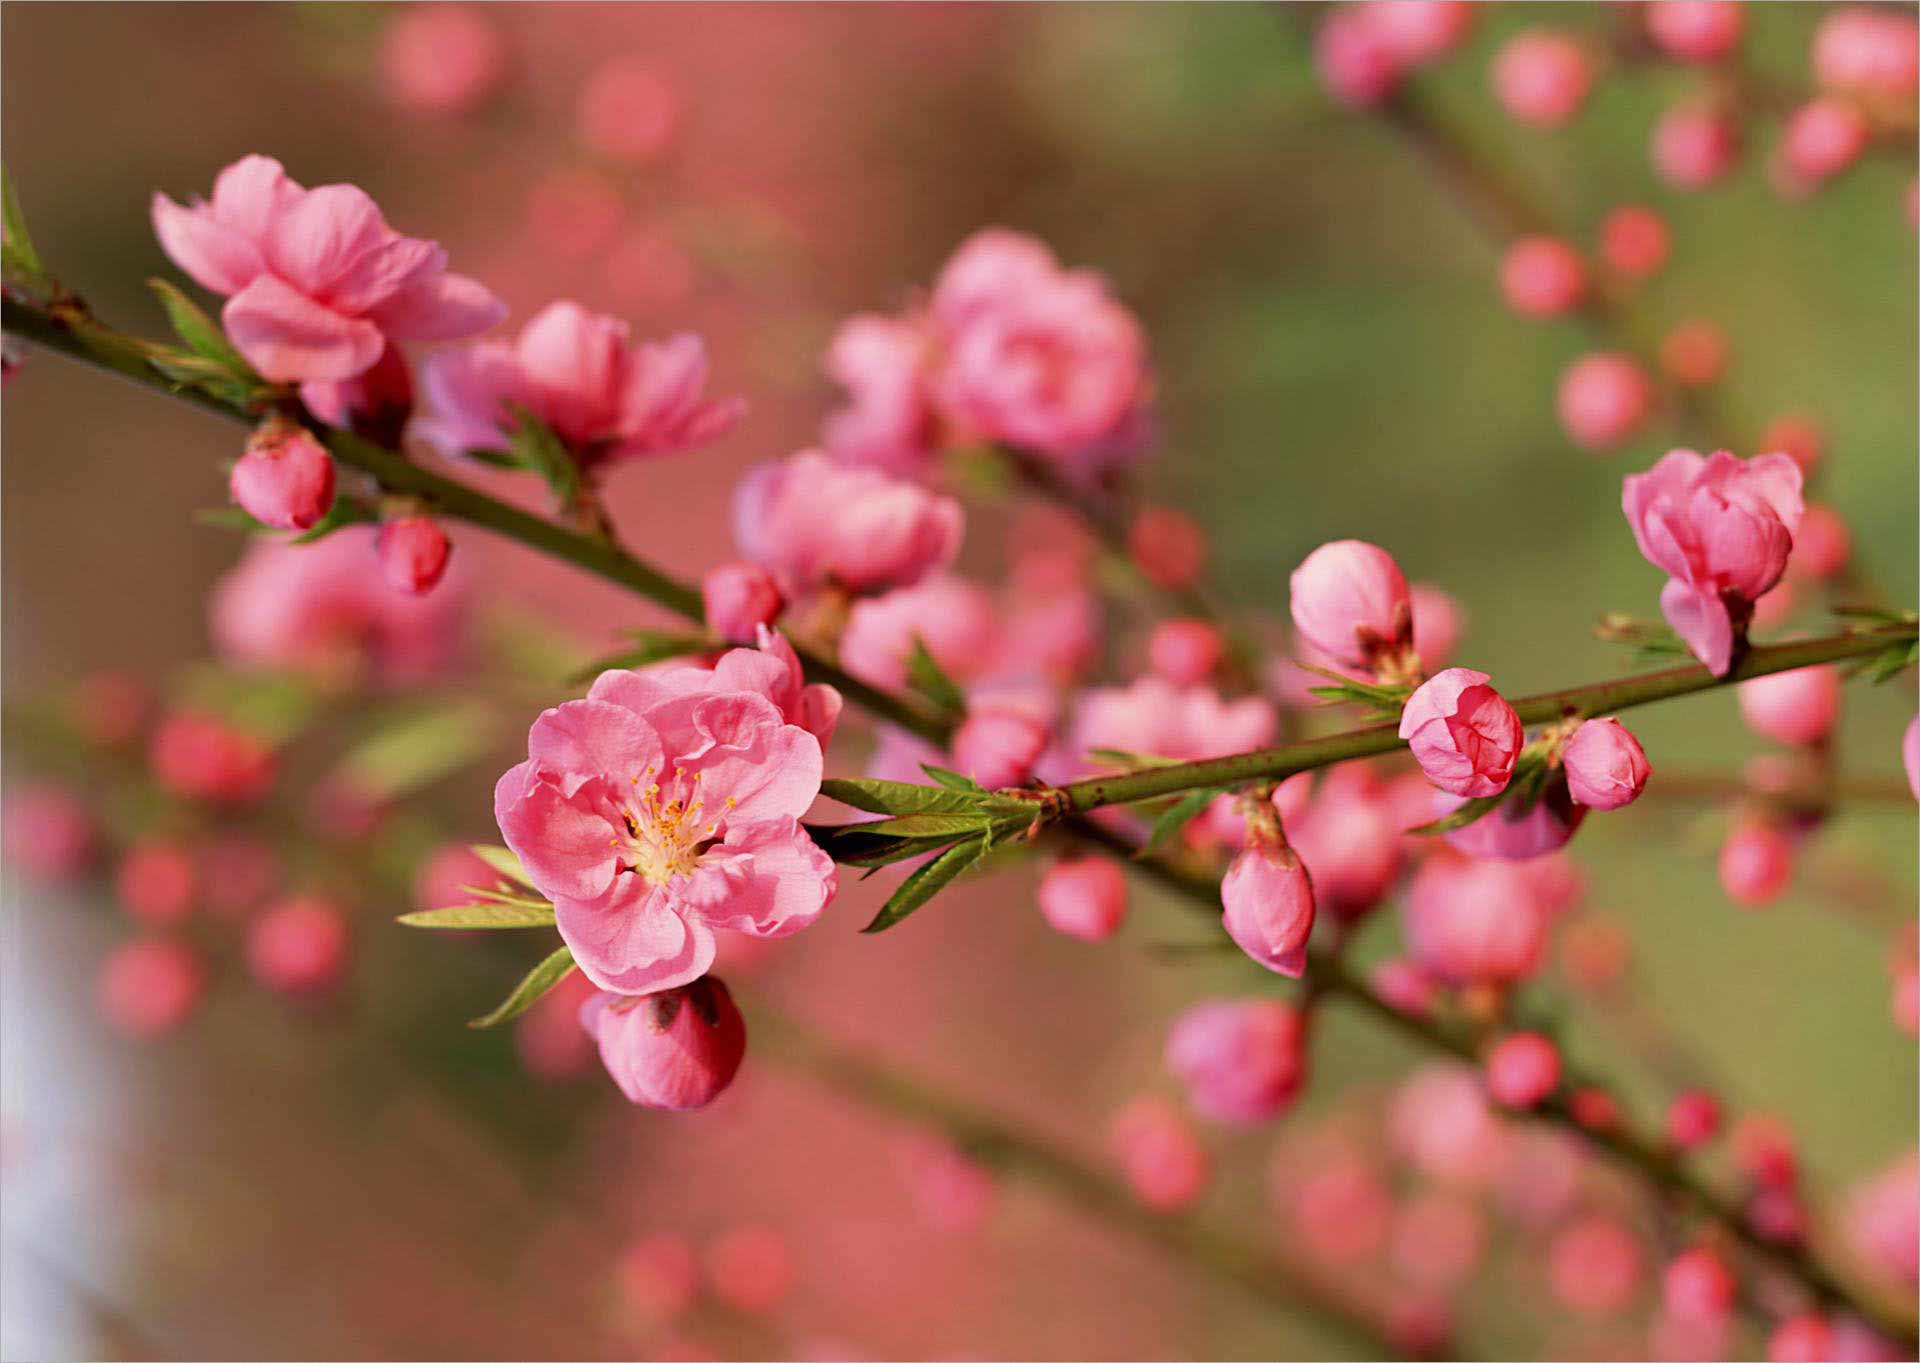 Hoa đào ngày Tết là biểu tượng đặc trưng của mùa xuân và niềm hạnh phúc của người Việt. Những cánh đào đỏ rực và khoe sắc trên nền tuyết trắng sẽ làm cho mùa Tết của bạn trở nên tràn đầy mong ước và may mắn.